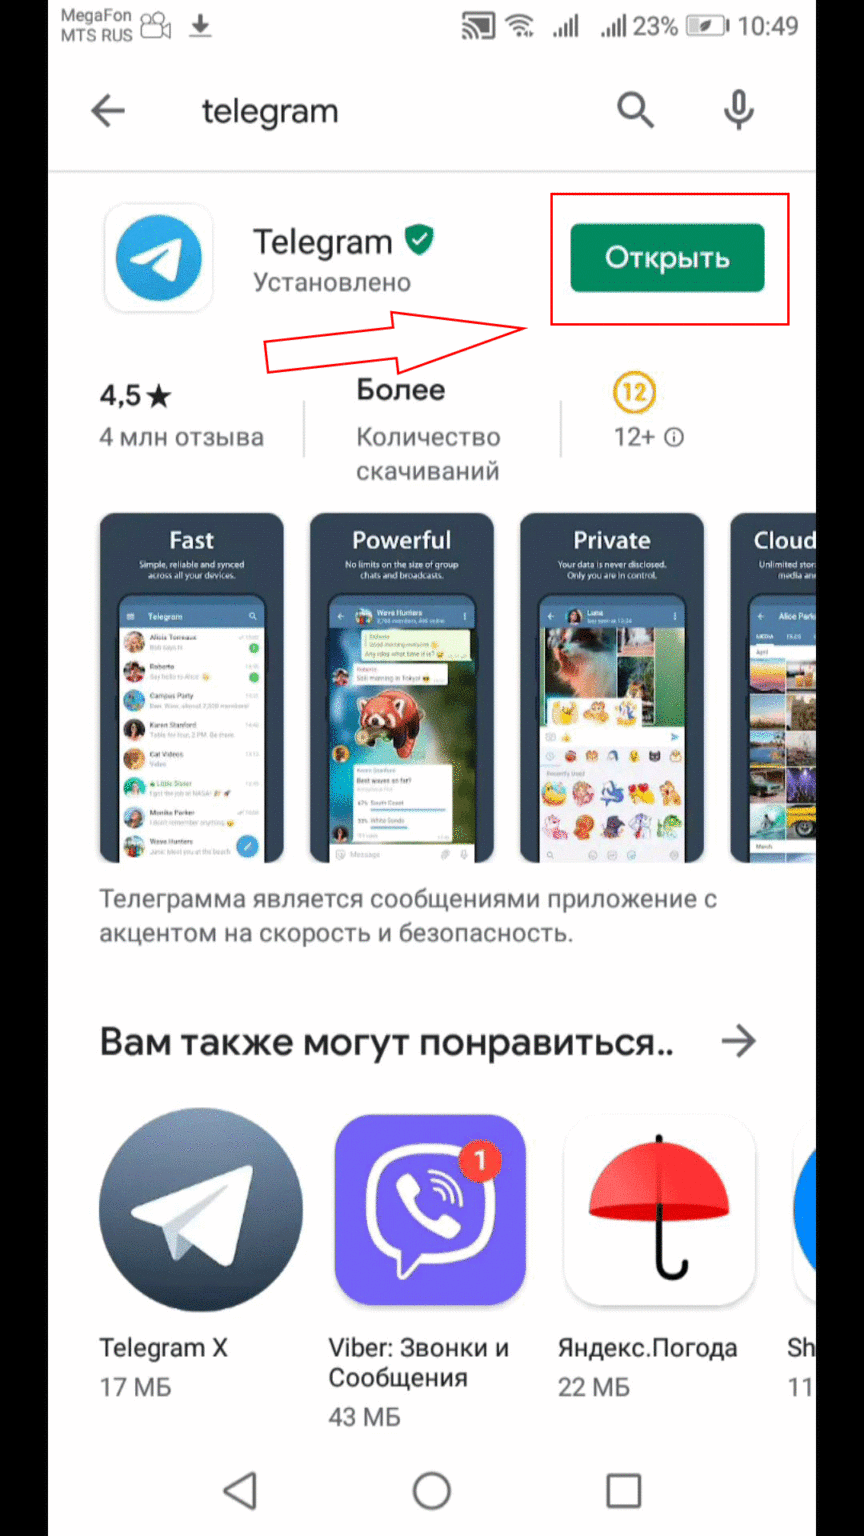 Телеграмм русская версия скачать бесплатно на андрои�� фото 26